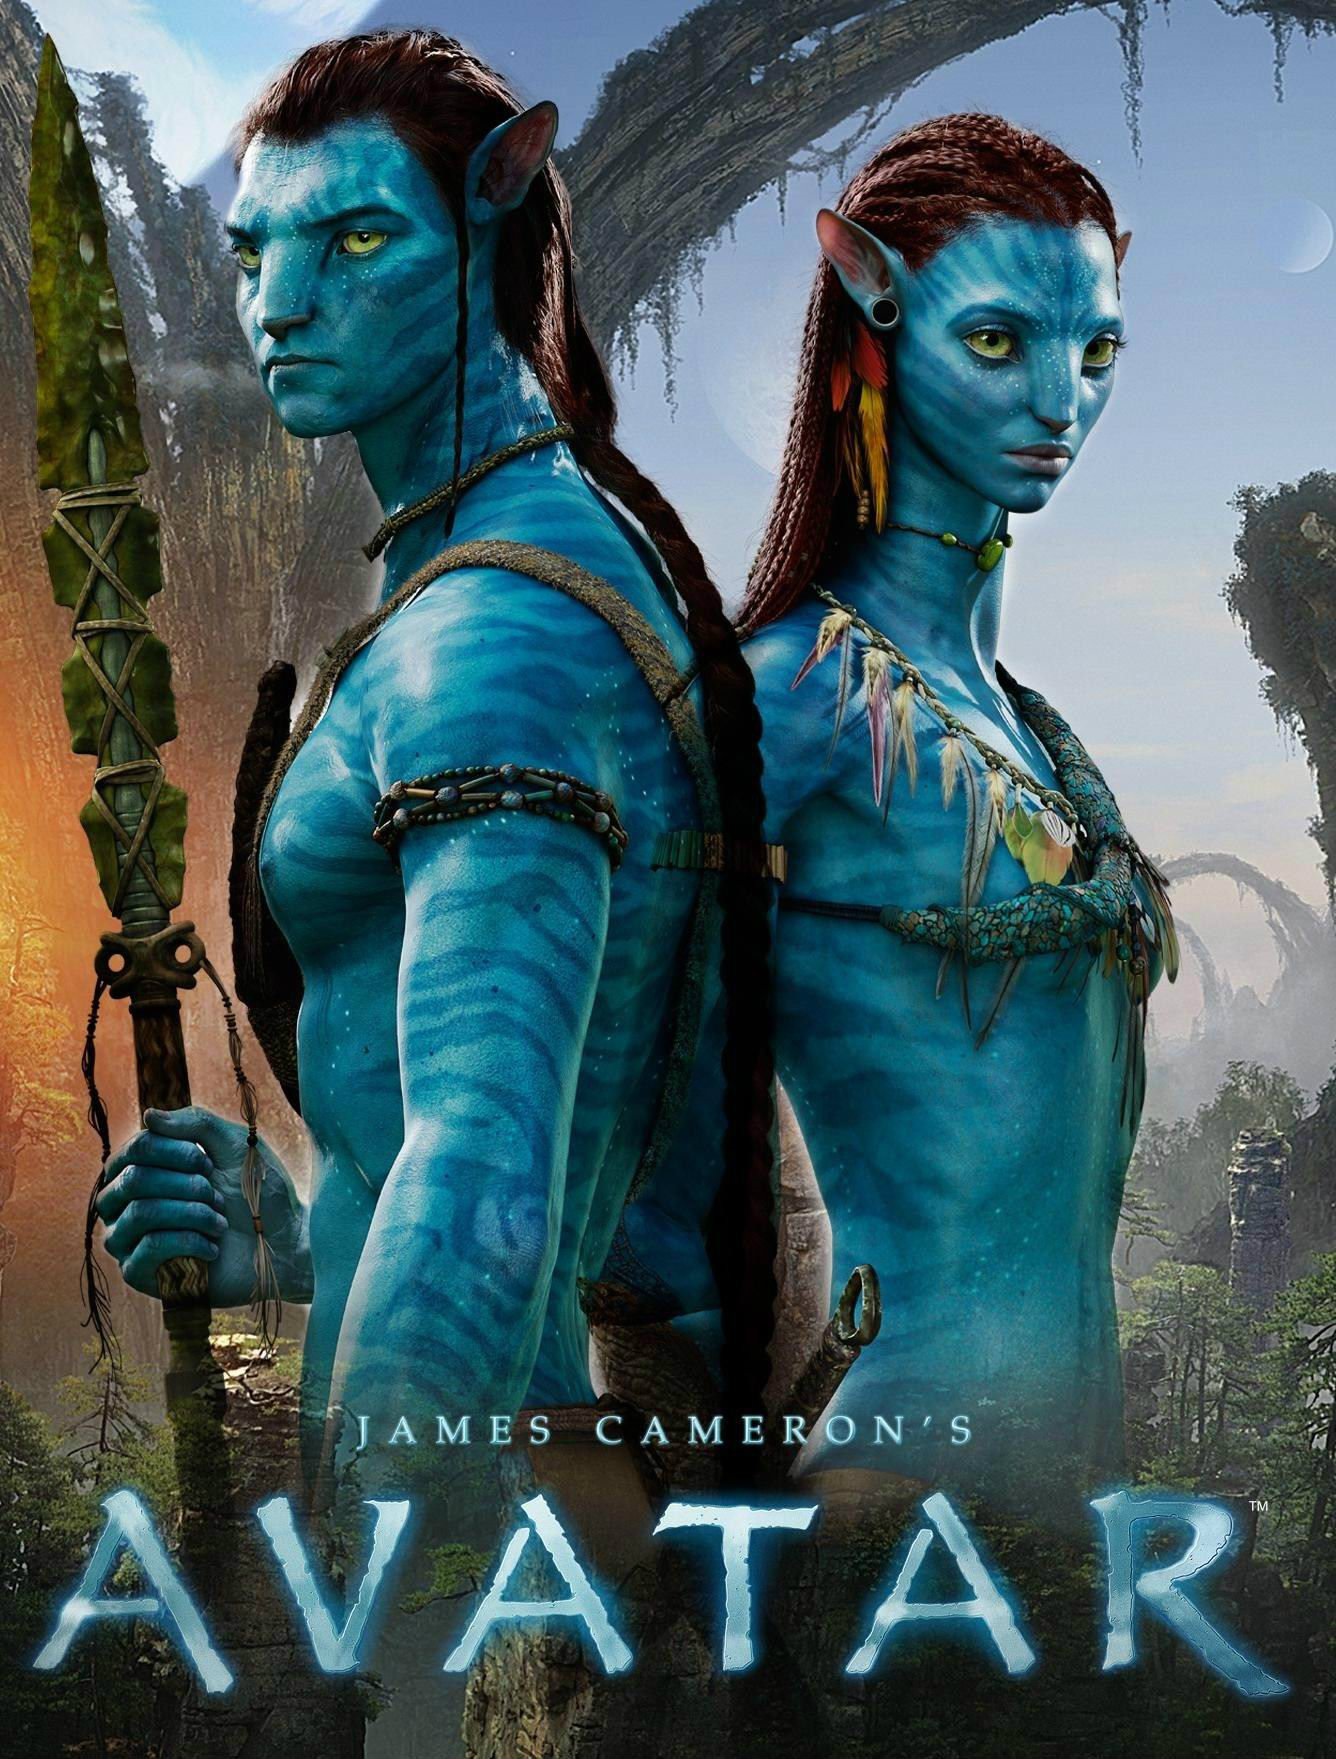  استطاع فيلم جيمس كاميرون (Avatar (2009 تحقيق أكثر من مليار دولار في 